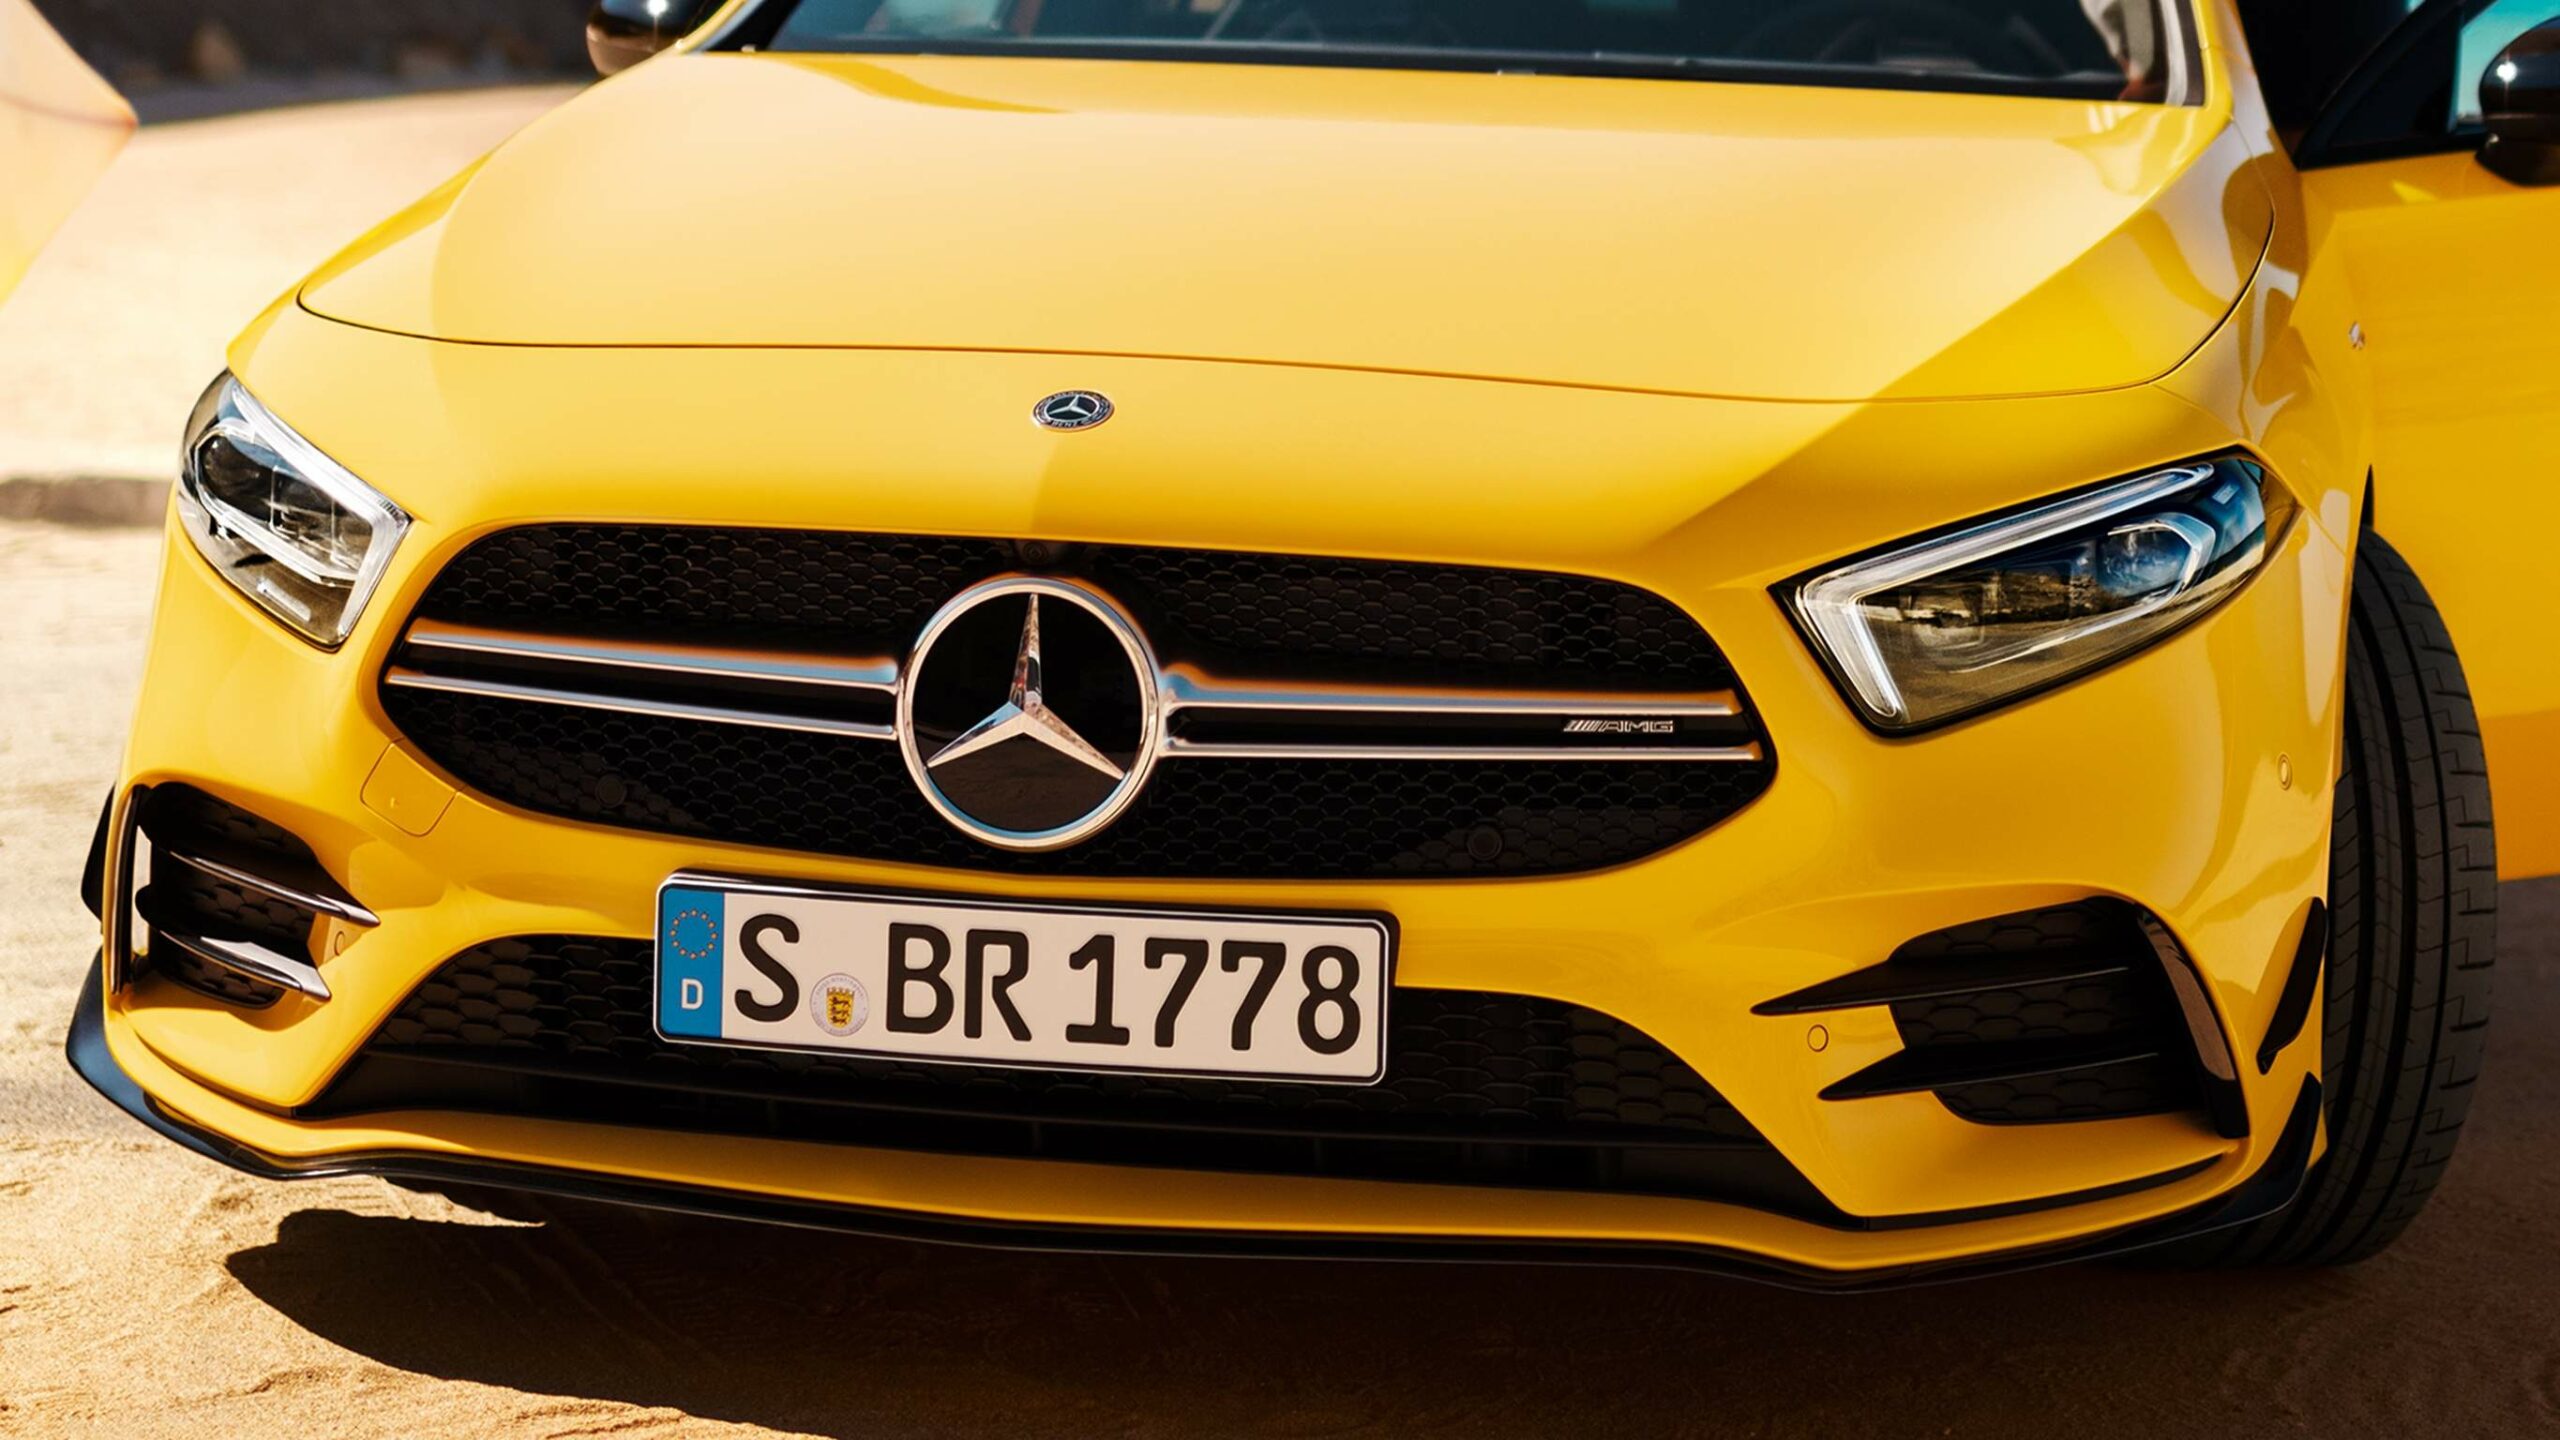 Frente de una Clase A AMG compacta de color amarillo, deportividad pura